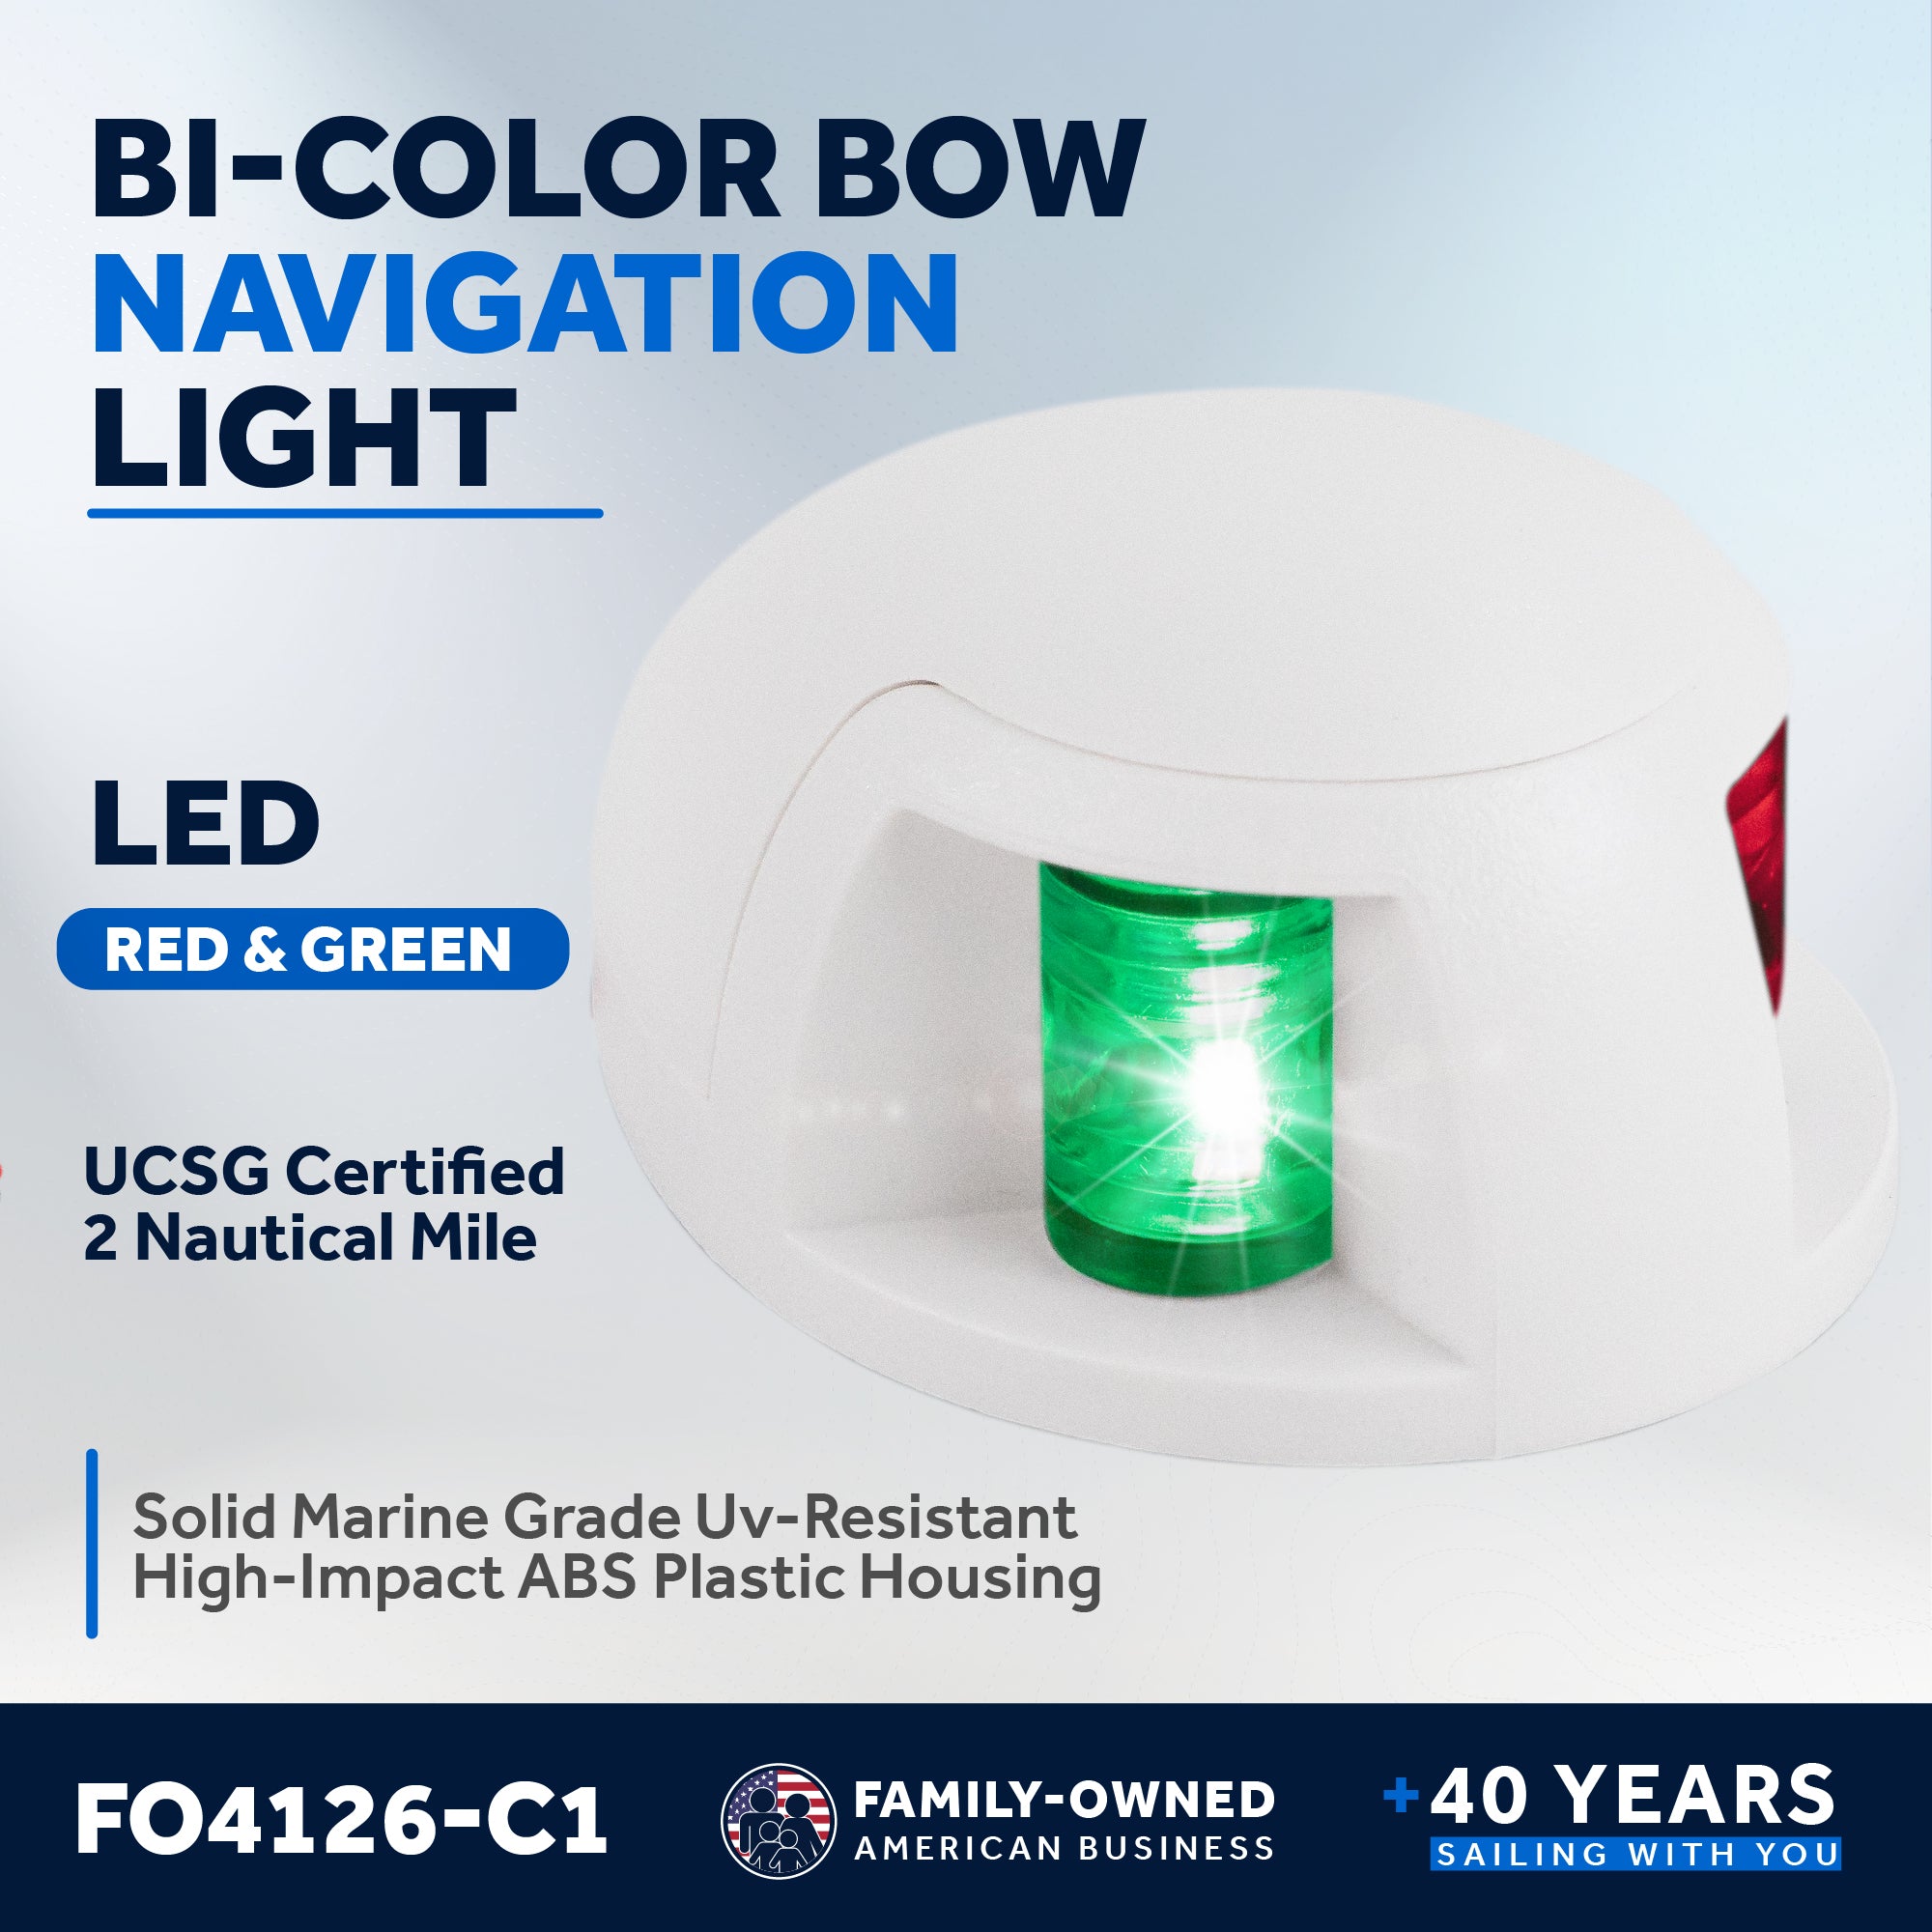 LED Bi-Color Bow and LED Anchor 360 Navigation Light set - FO4126-C1